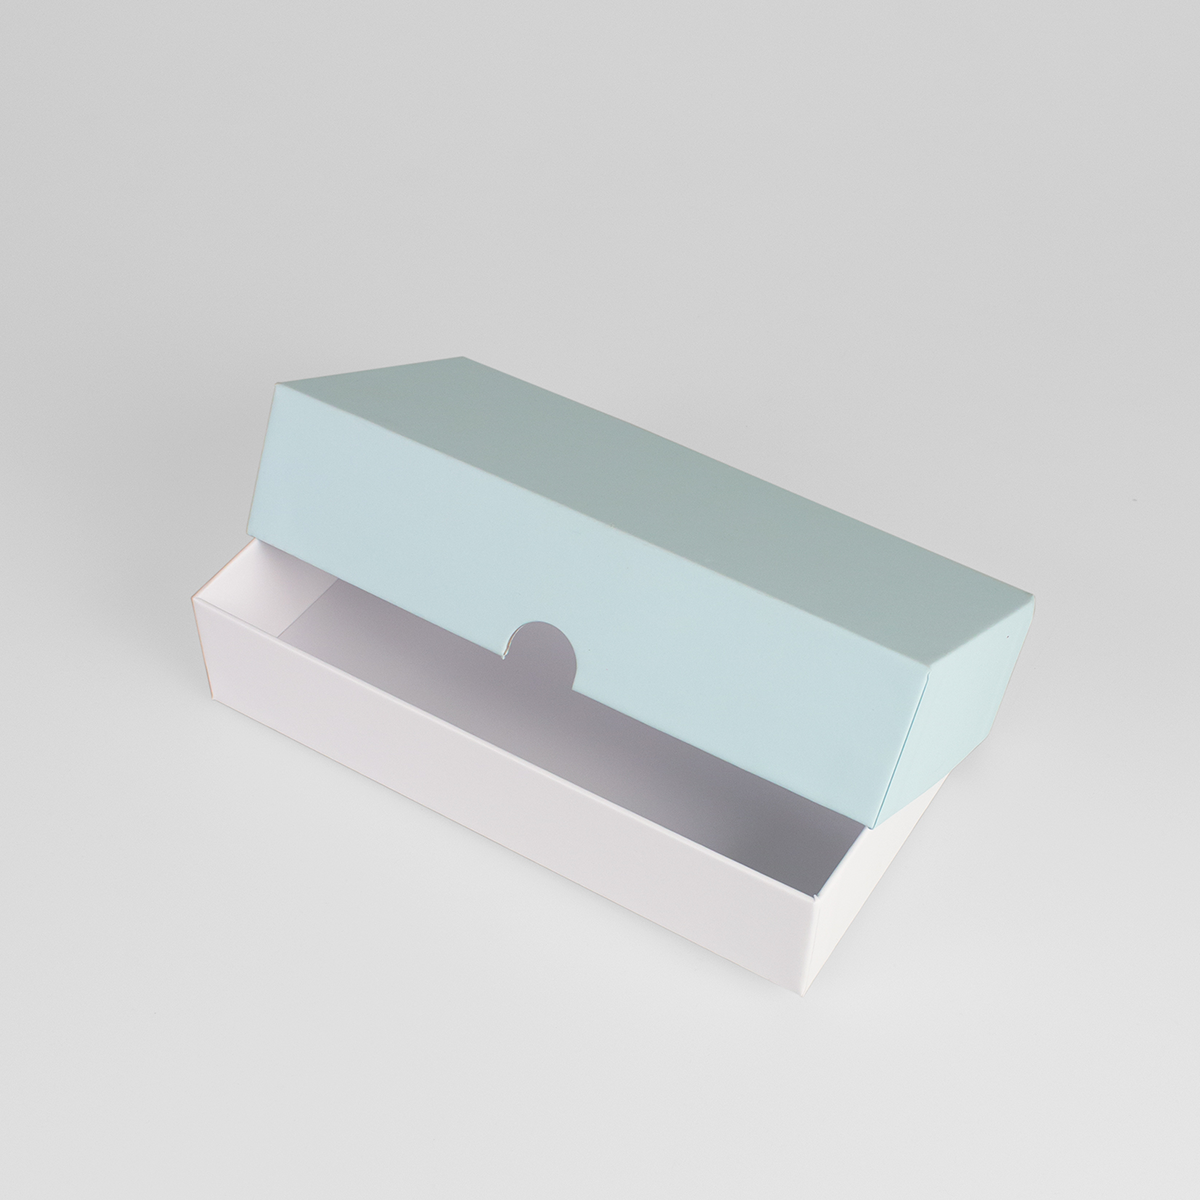 Подарочная коробка крышка-дно, 21.5 x 10.5 x 5 см. "Радуга", голубой, белый